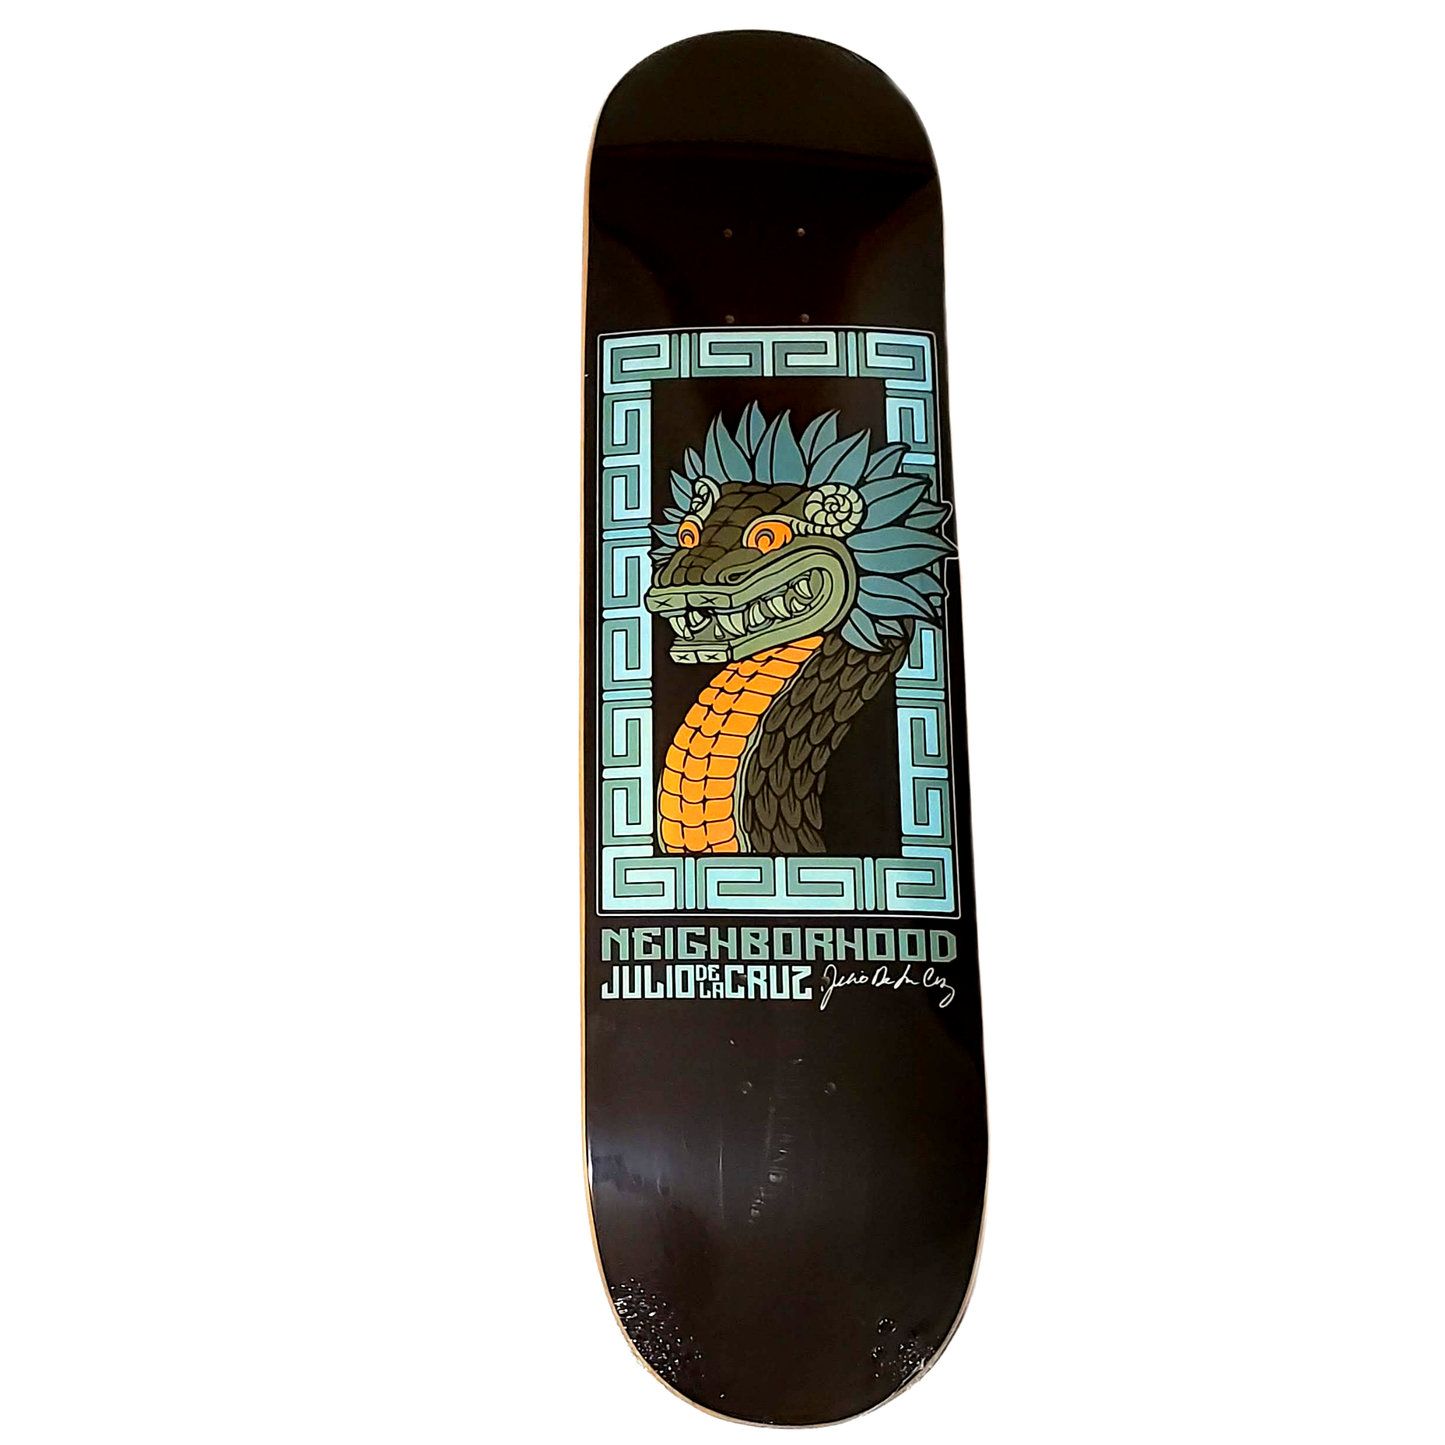 Neighborhood - "Julio De La Cruz Signature Dragon" - Skateboard Deck - (PS Stix)  8.0"